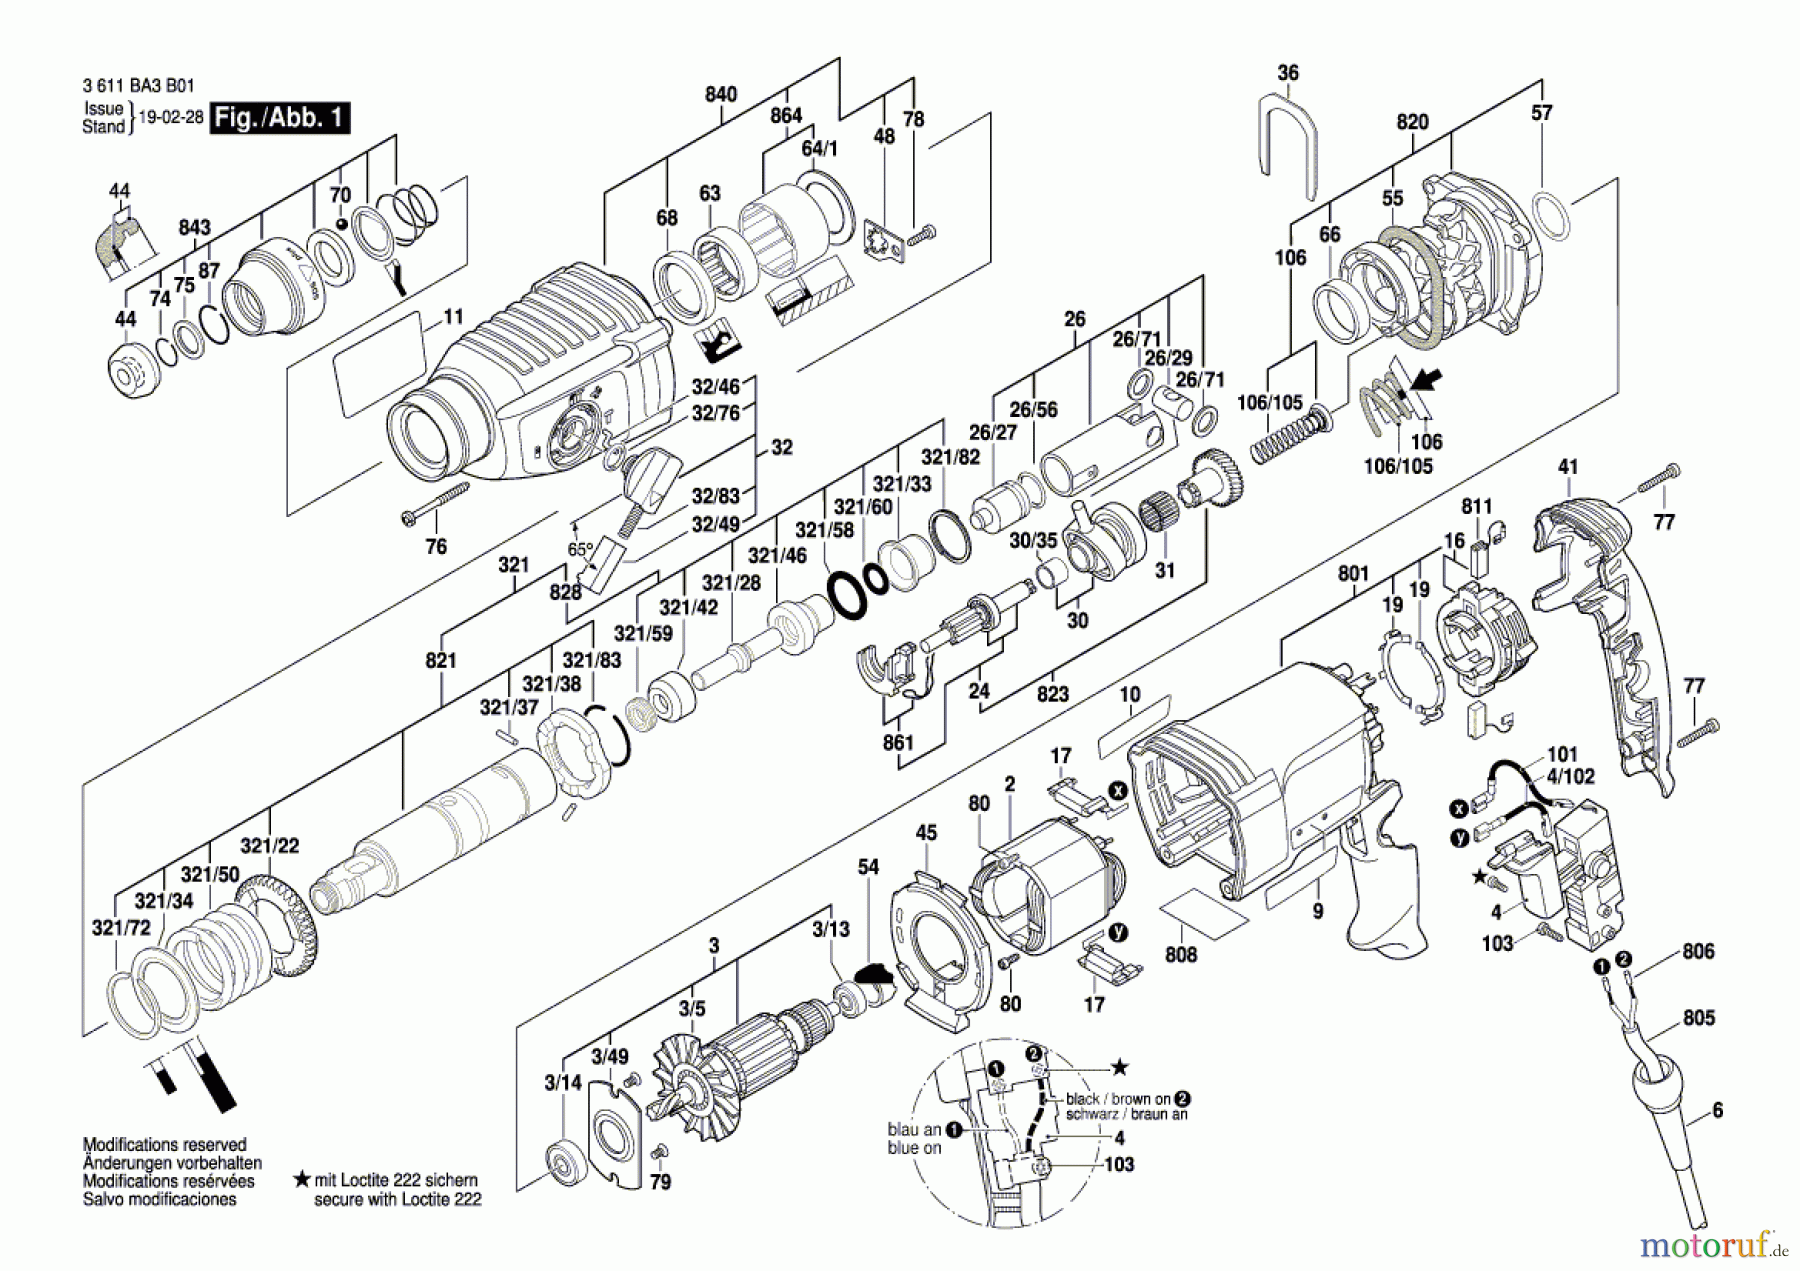  Bosch Werkzeug Bohrhammer 2 Kg BHD 2-26 Seite 1